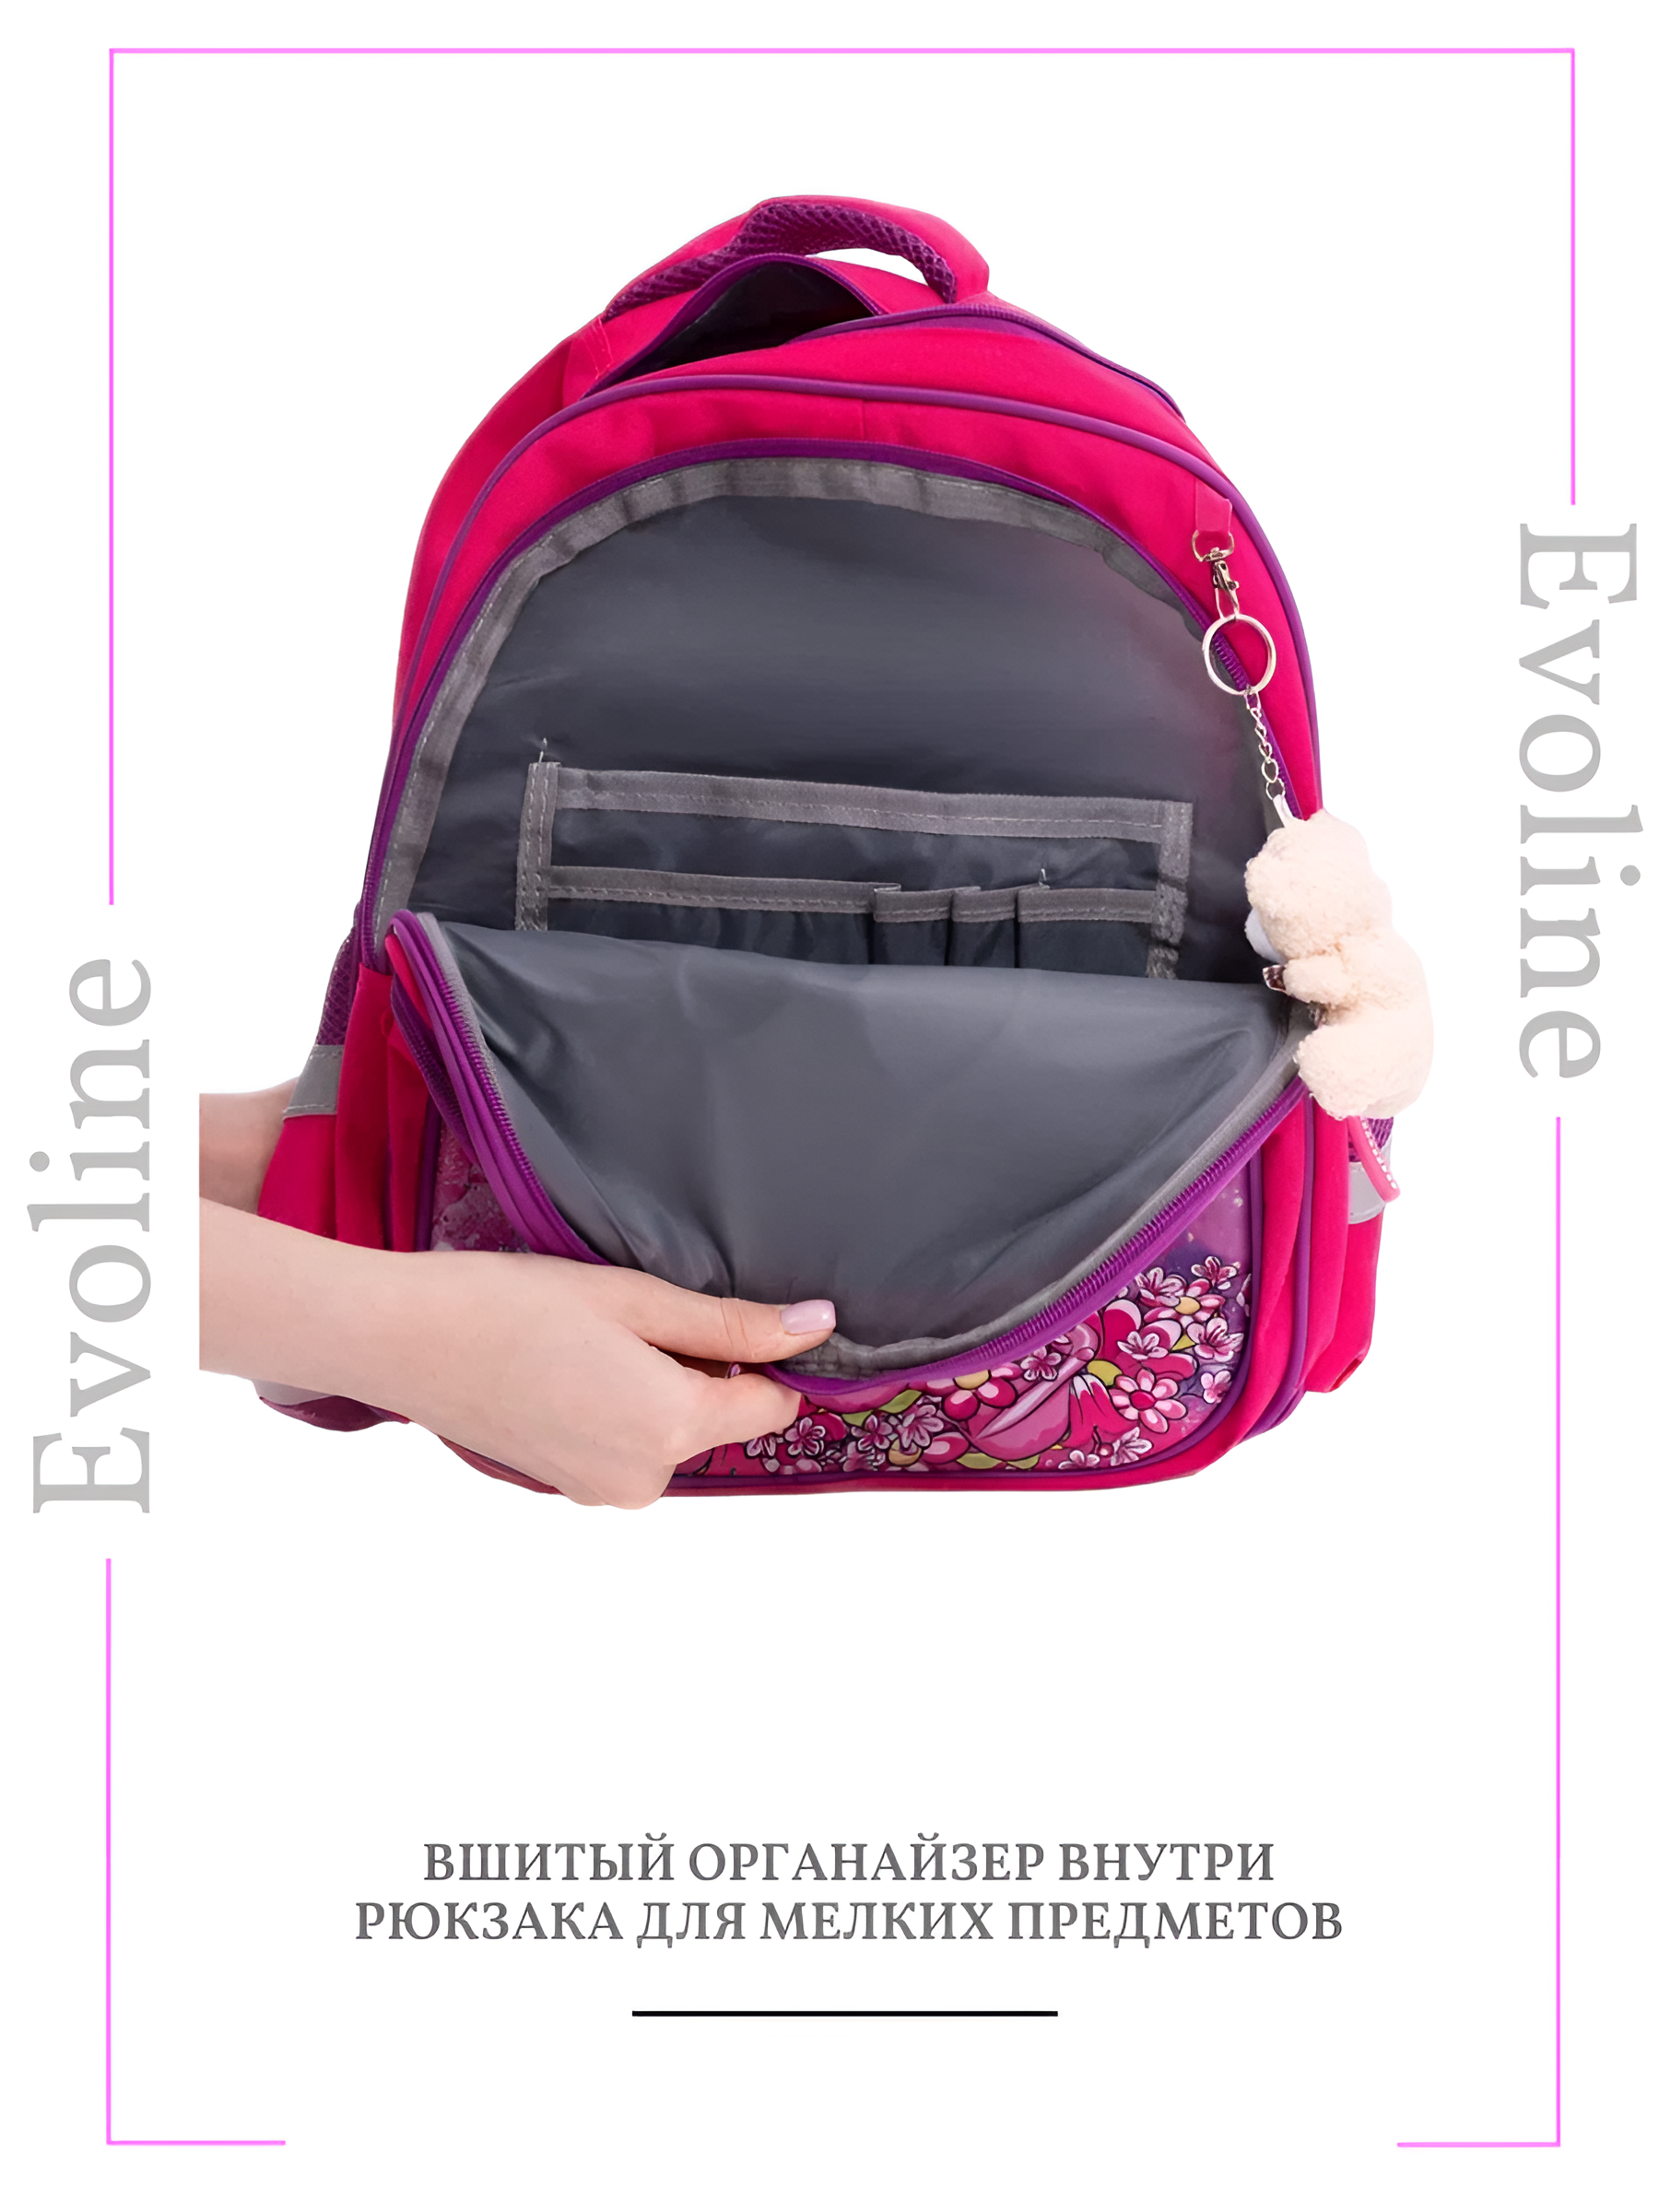 Рюкзак школьный Evoline Единорог розовый S700-girl-1 с анатомической спинкой - фото 4